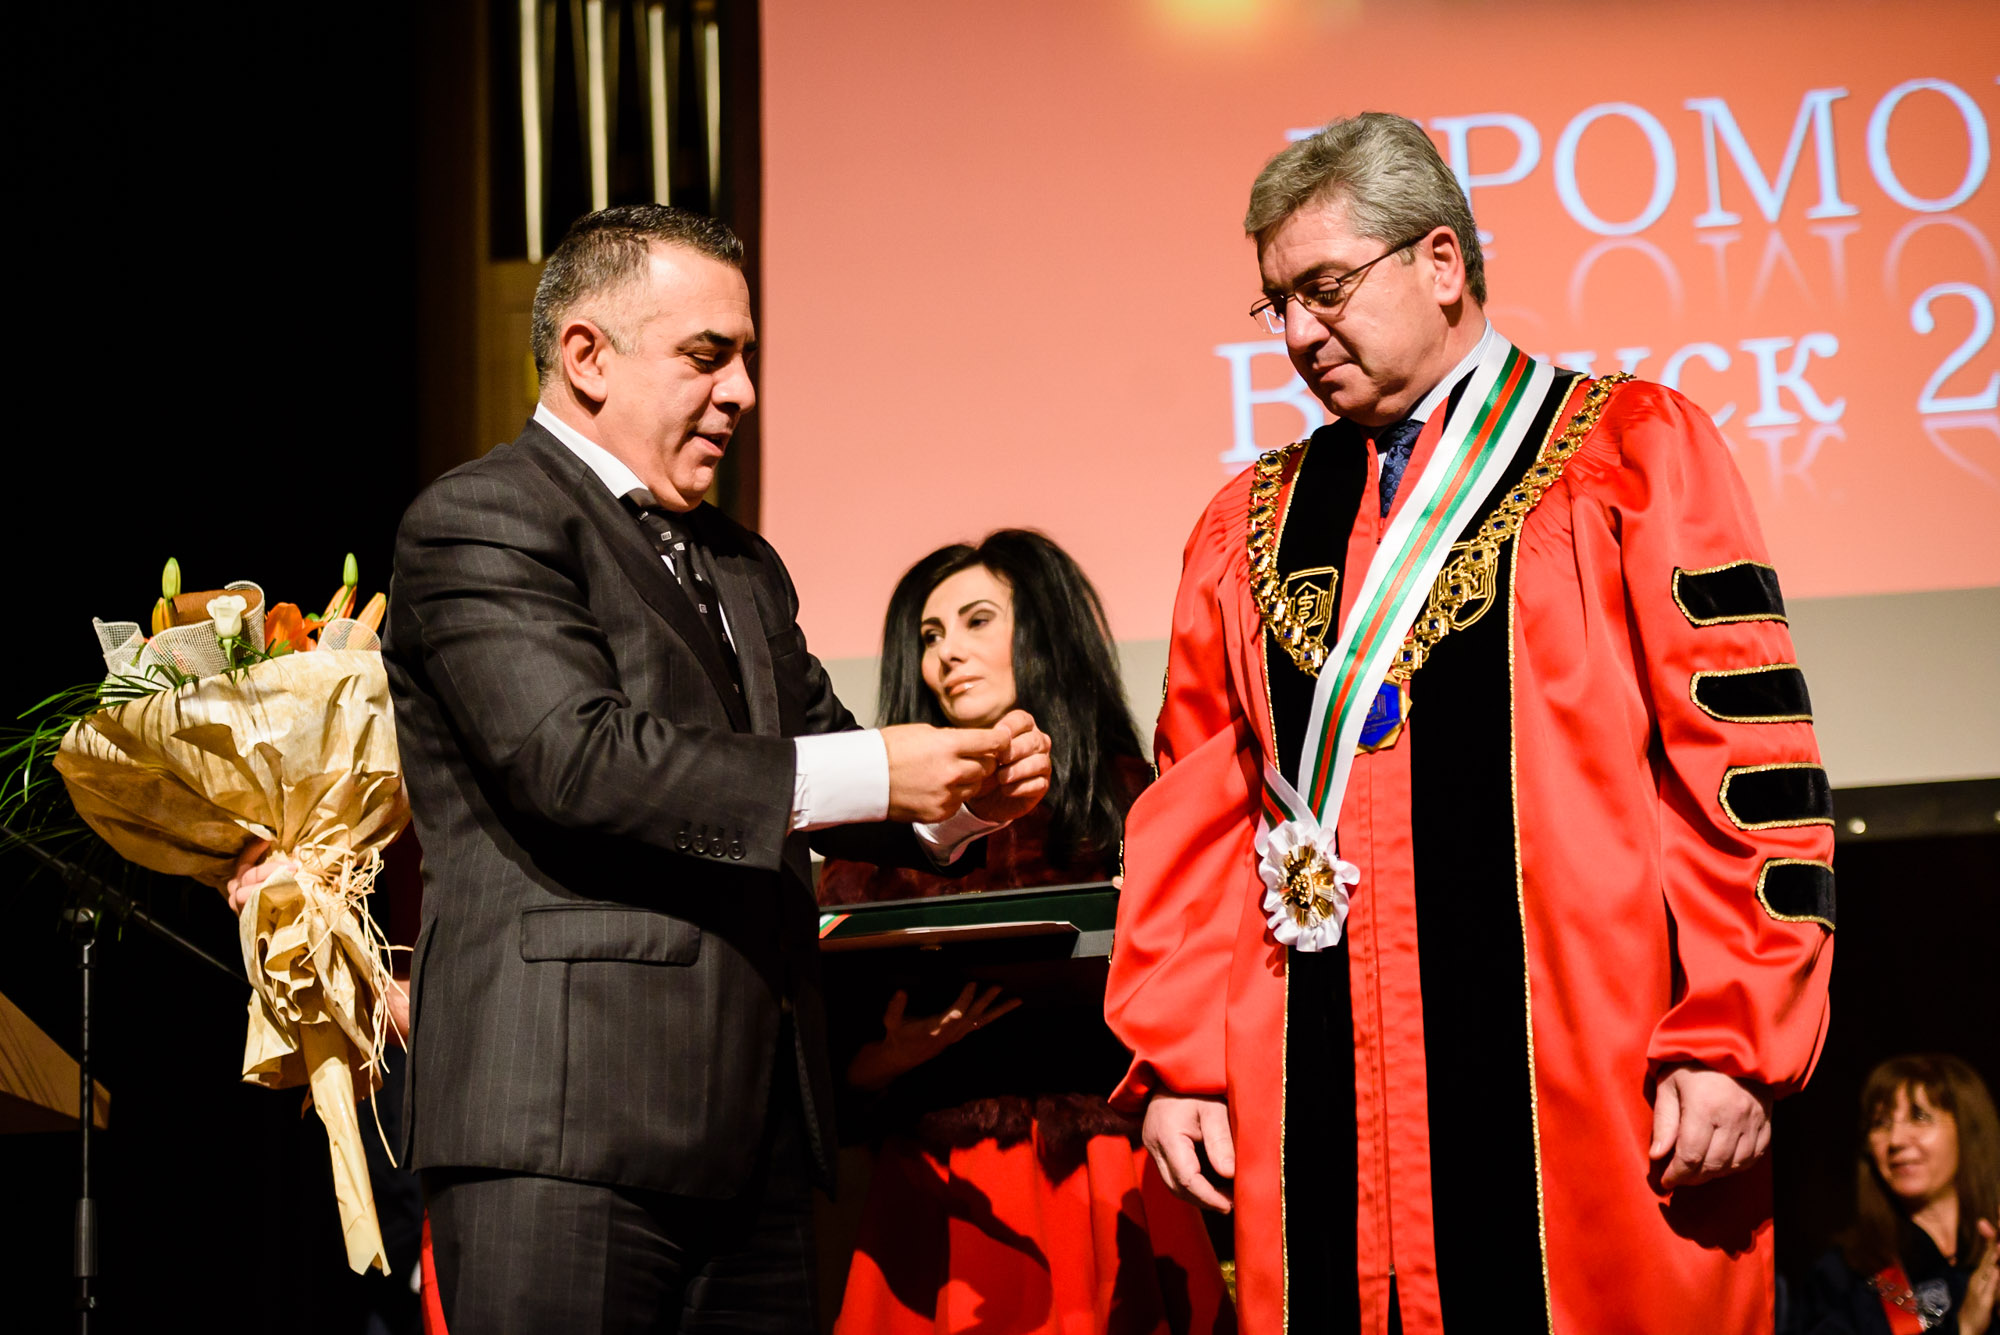 Проф. д-р Красимир Иванов получи званието „Почетен гражданин на Сливен” от кмета на града Стефан Радев